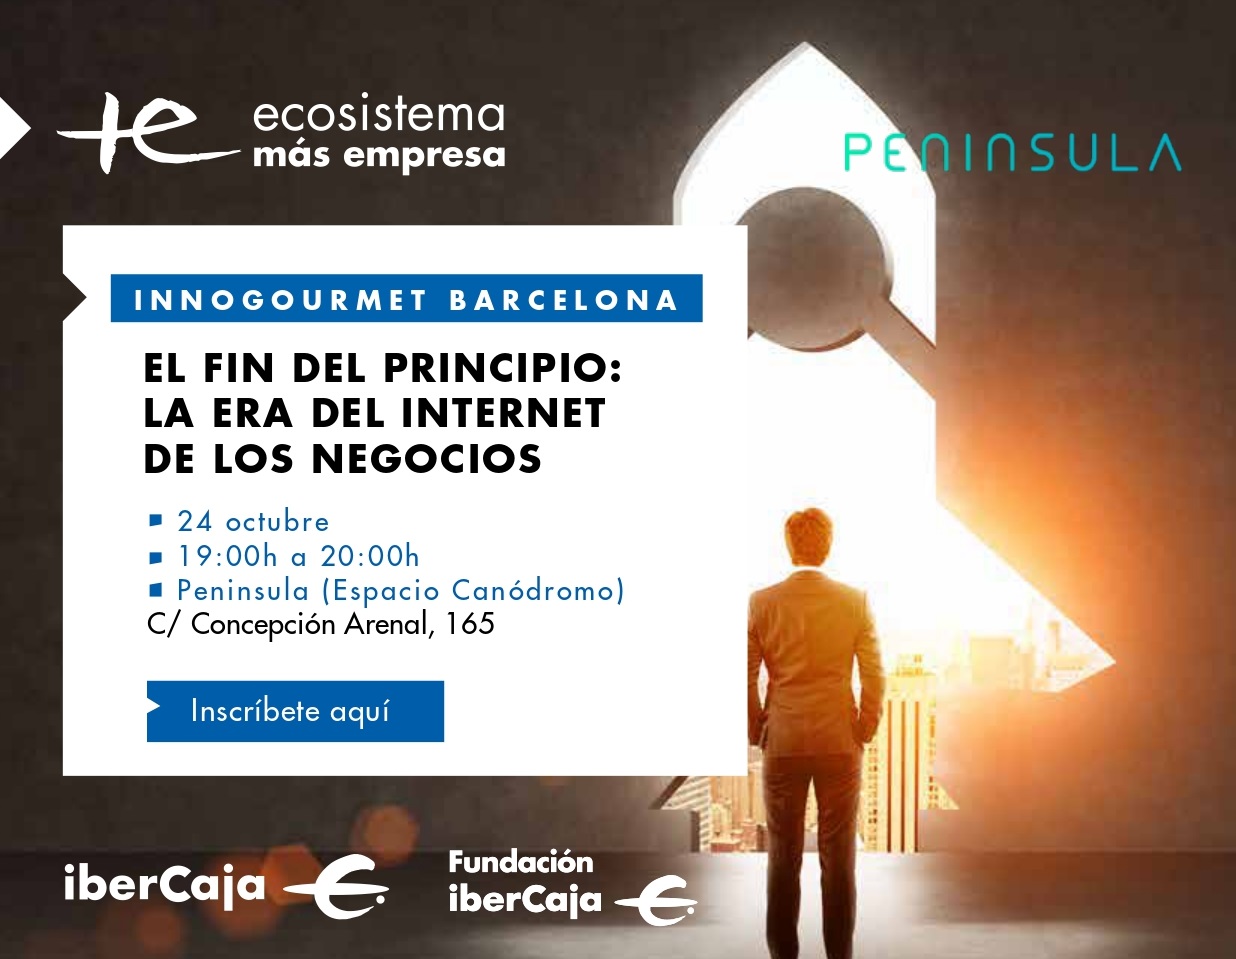 El Ecosistema de Ibercaja organiza Innogourmet, una cita para conocer lo mejor de la innovación en España